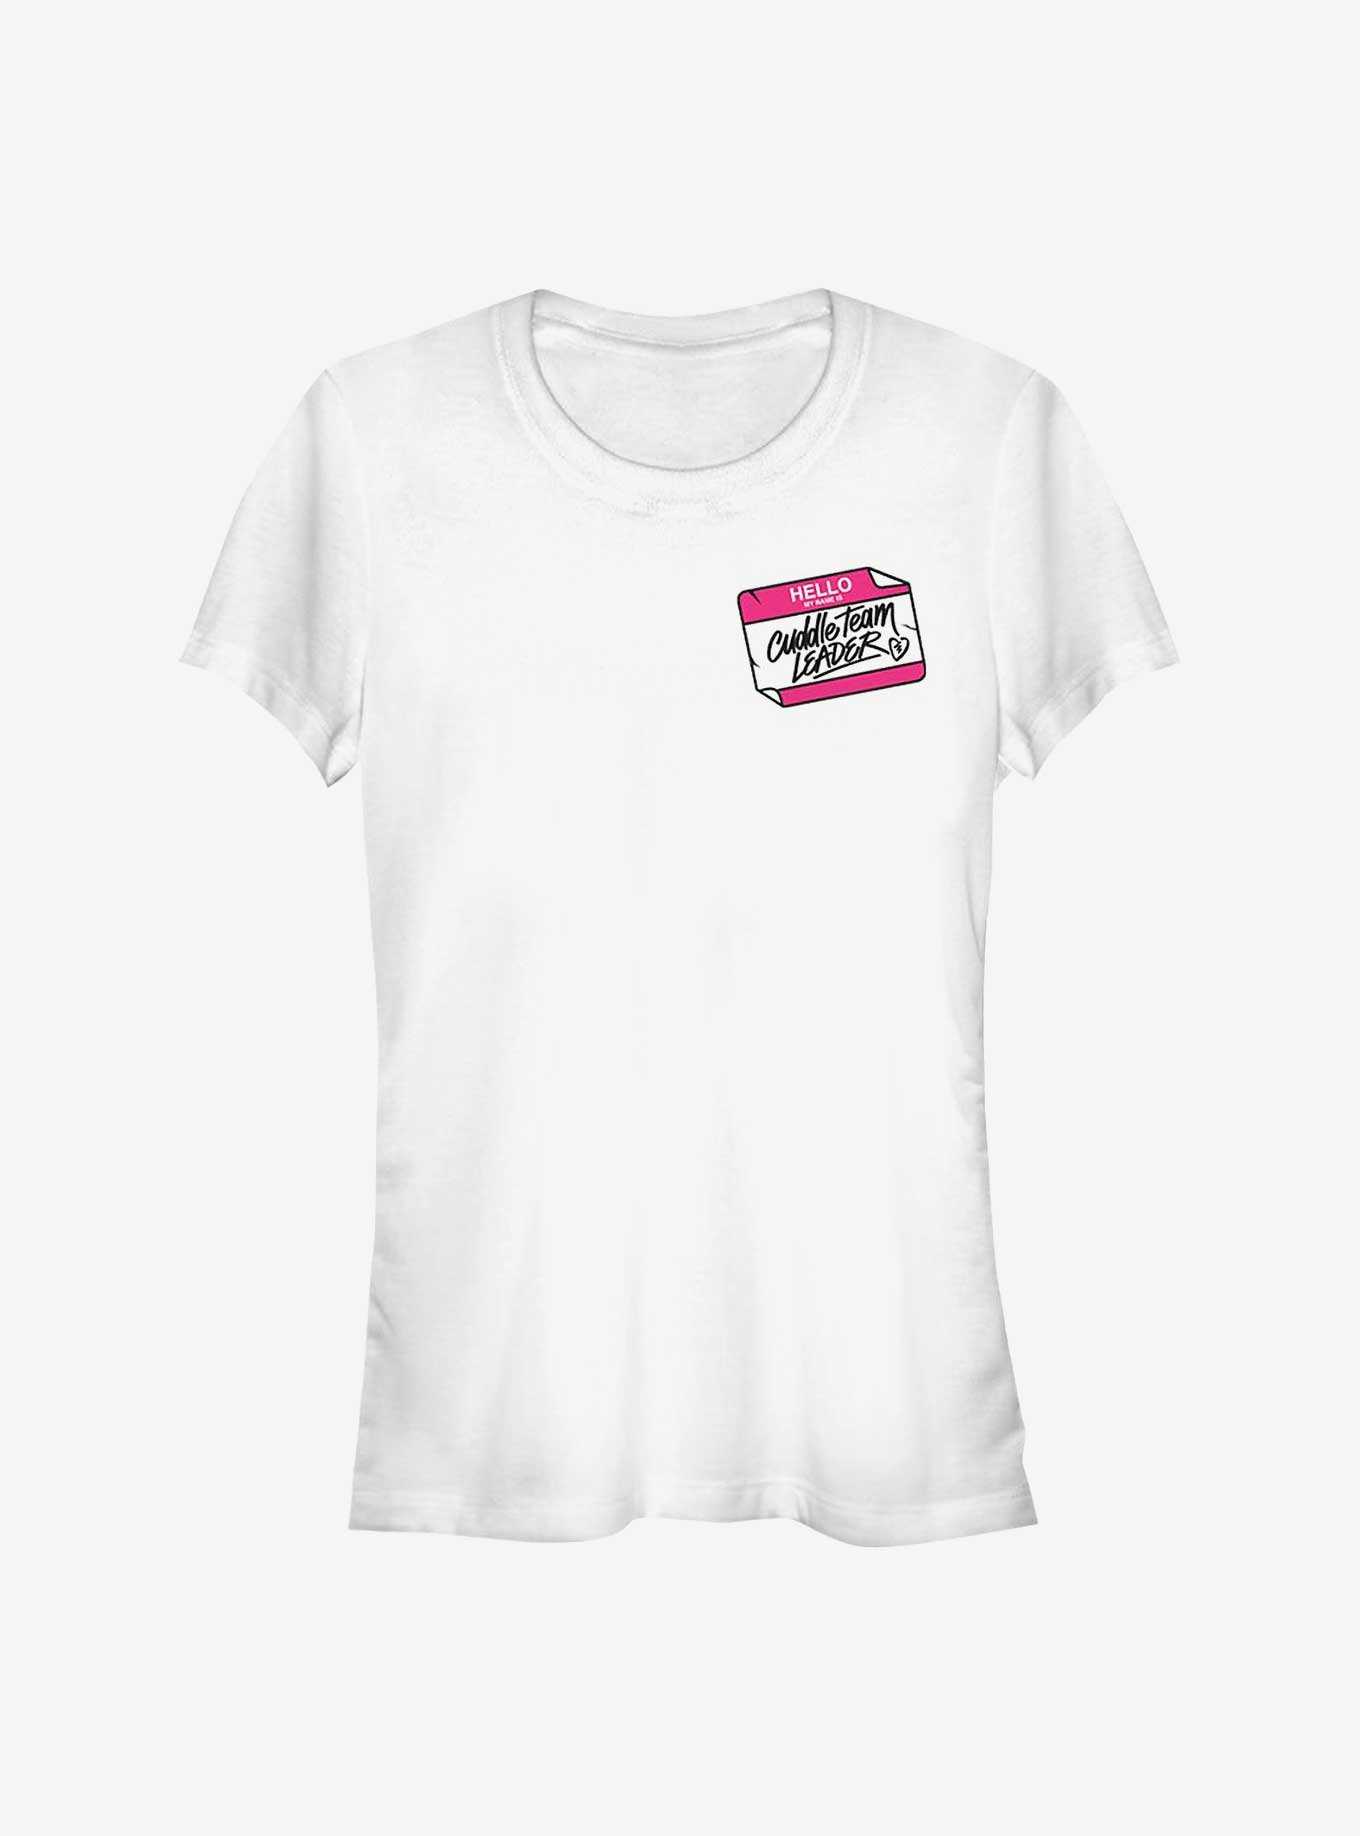 Fortnite Cuddle Team Leader Girls T-Shirt, , hi-res